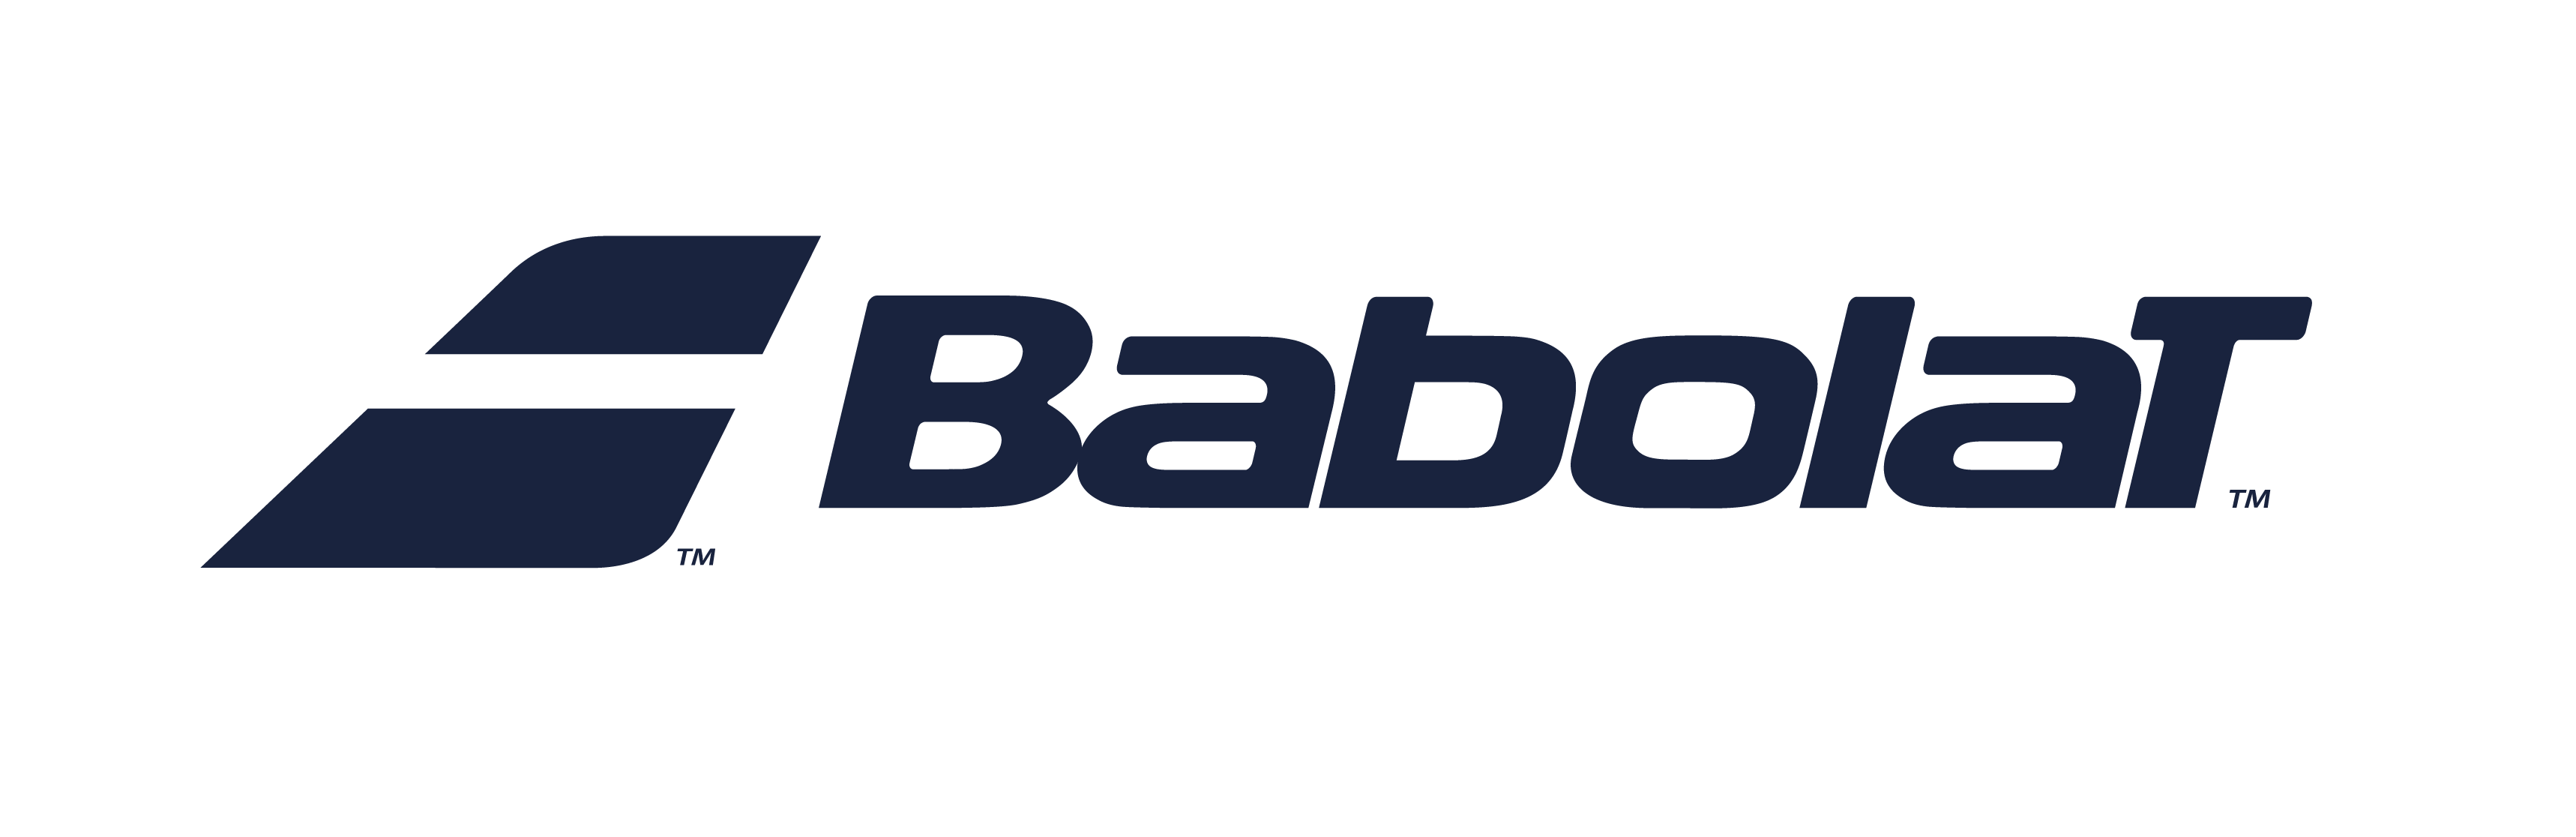 logo babolat